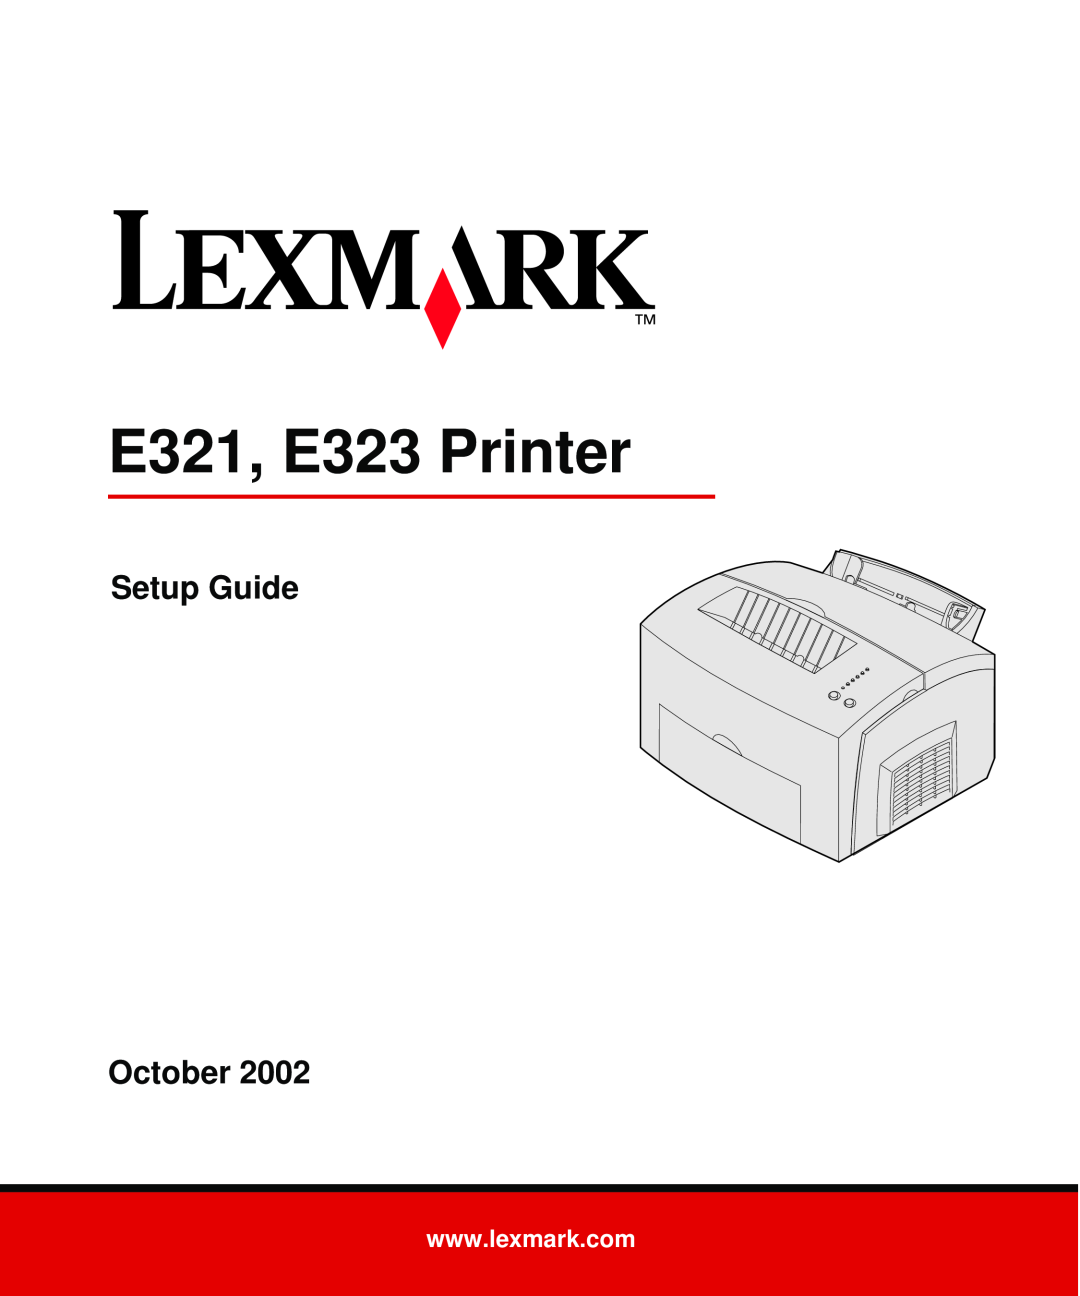 Lexmark setup guide E321, E323 Printer, Setup Guide October 